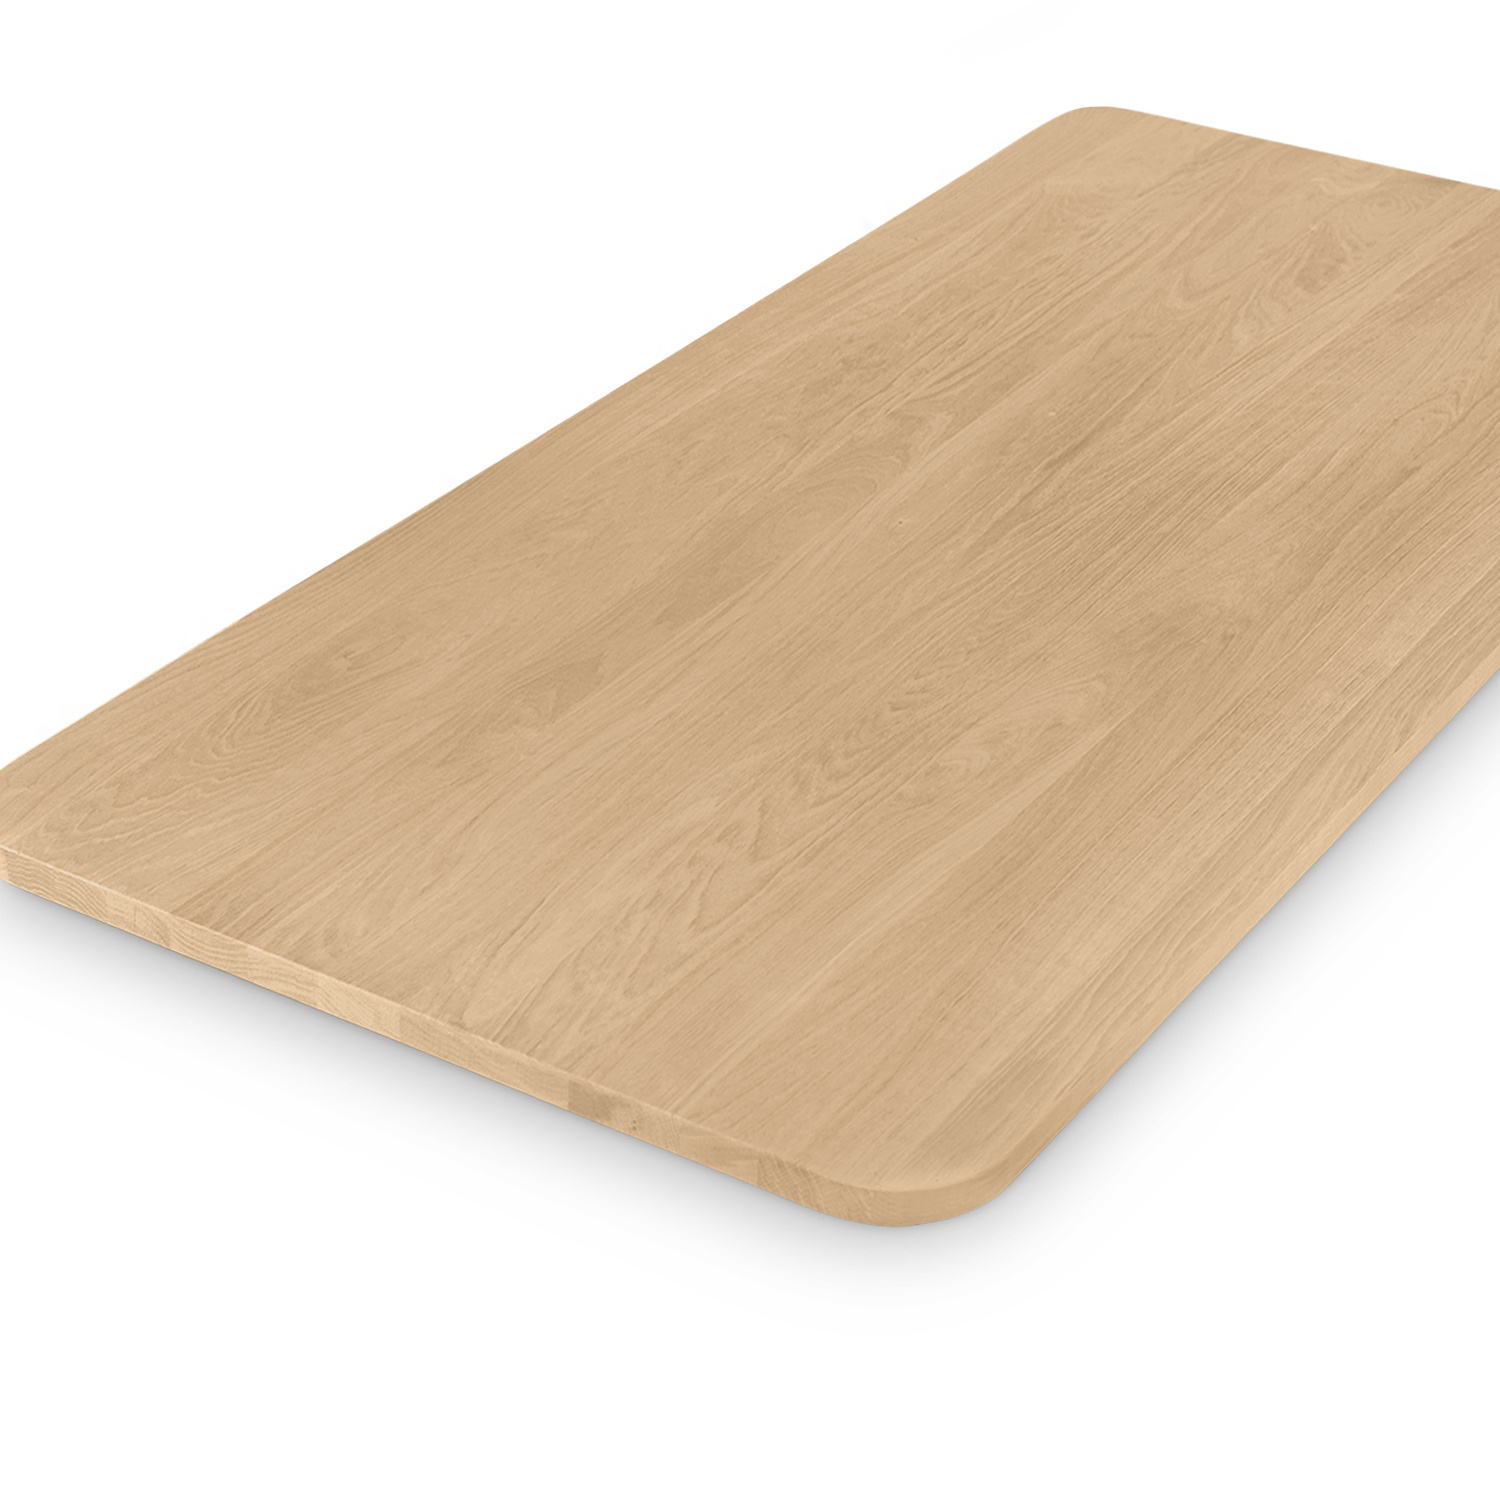  Tischplatte Eiche - mit runden Ecken - nach Maß - 2,7 cm dick (1-Schicht) - Breite Lamellen (10 - 12 cm breit) - Eichenholz A-Qualität - verleimt & künstlich getrocknet (HF 8-12%) - mit abgerundeten Kanten - 50-120x50-248 cm